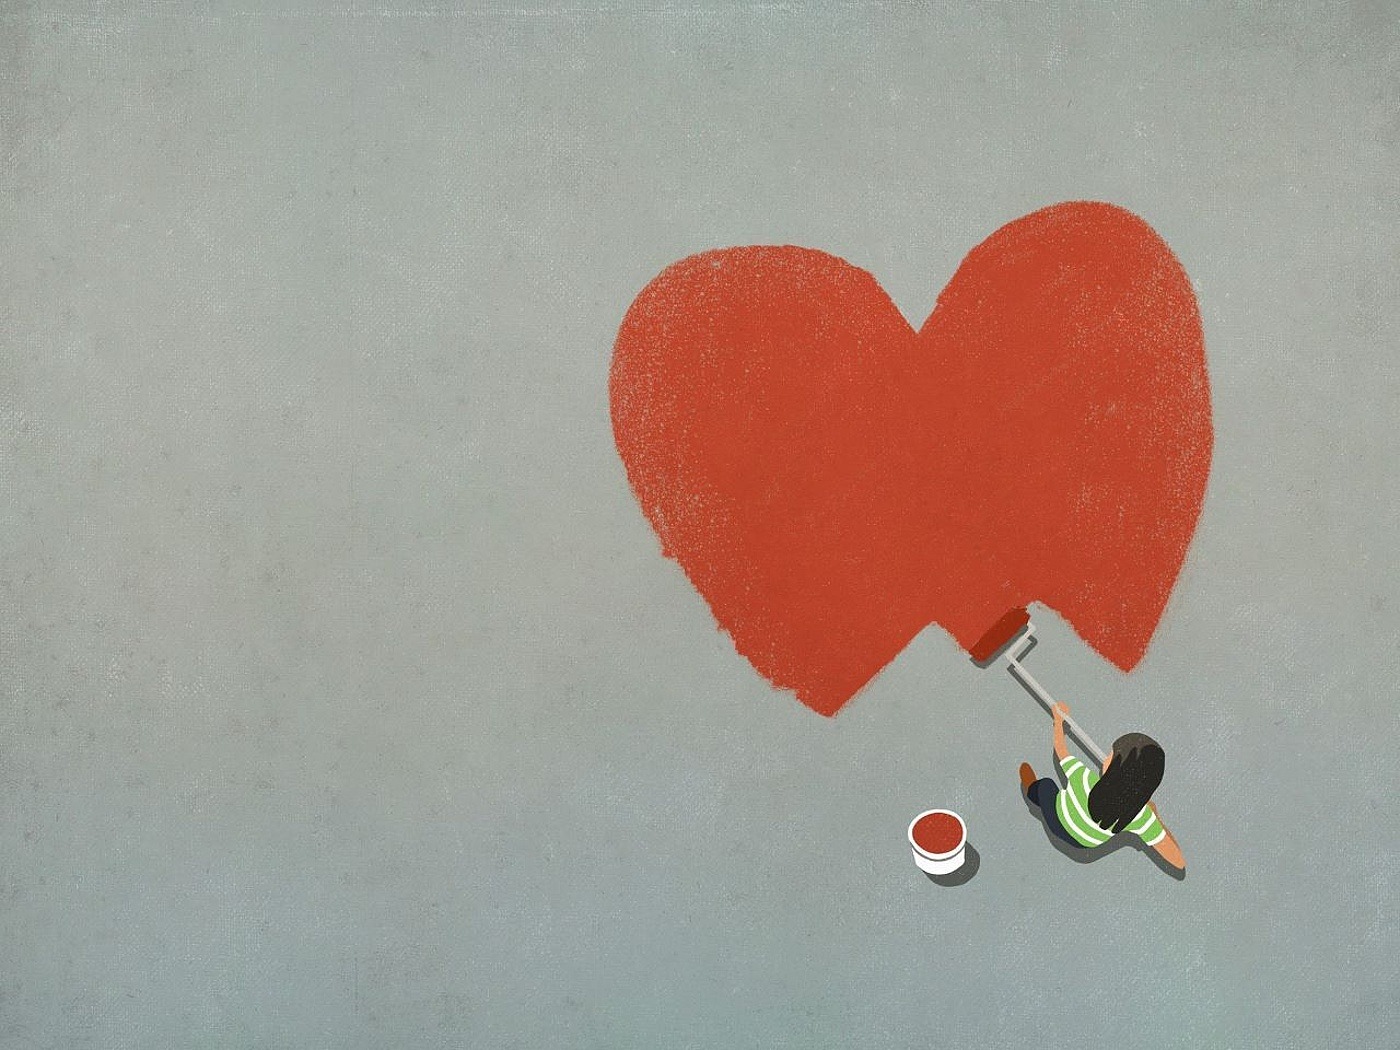 Frau malt mit einem besenartigen Pinsel ein riesiges Rotes Herz auf den grauen Boden